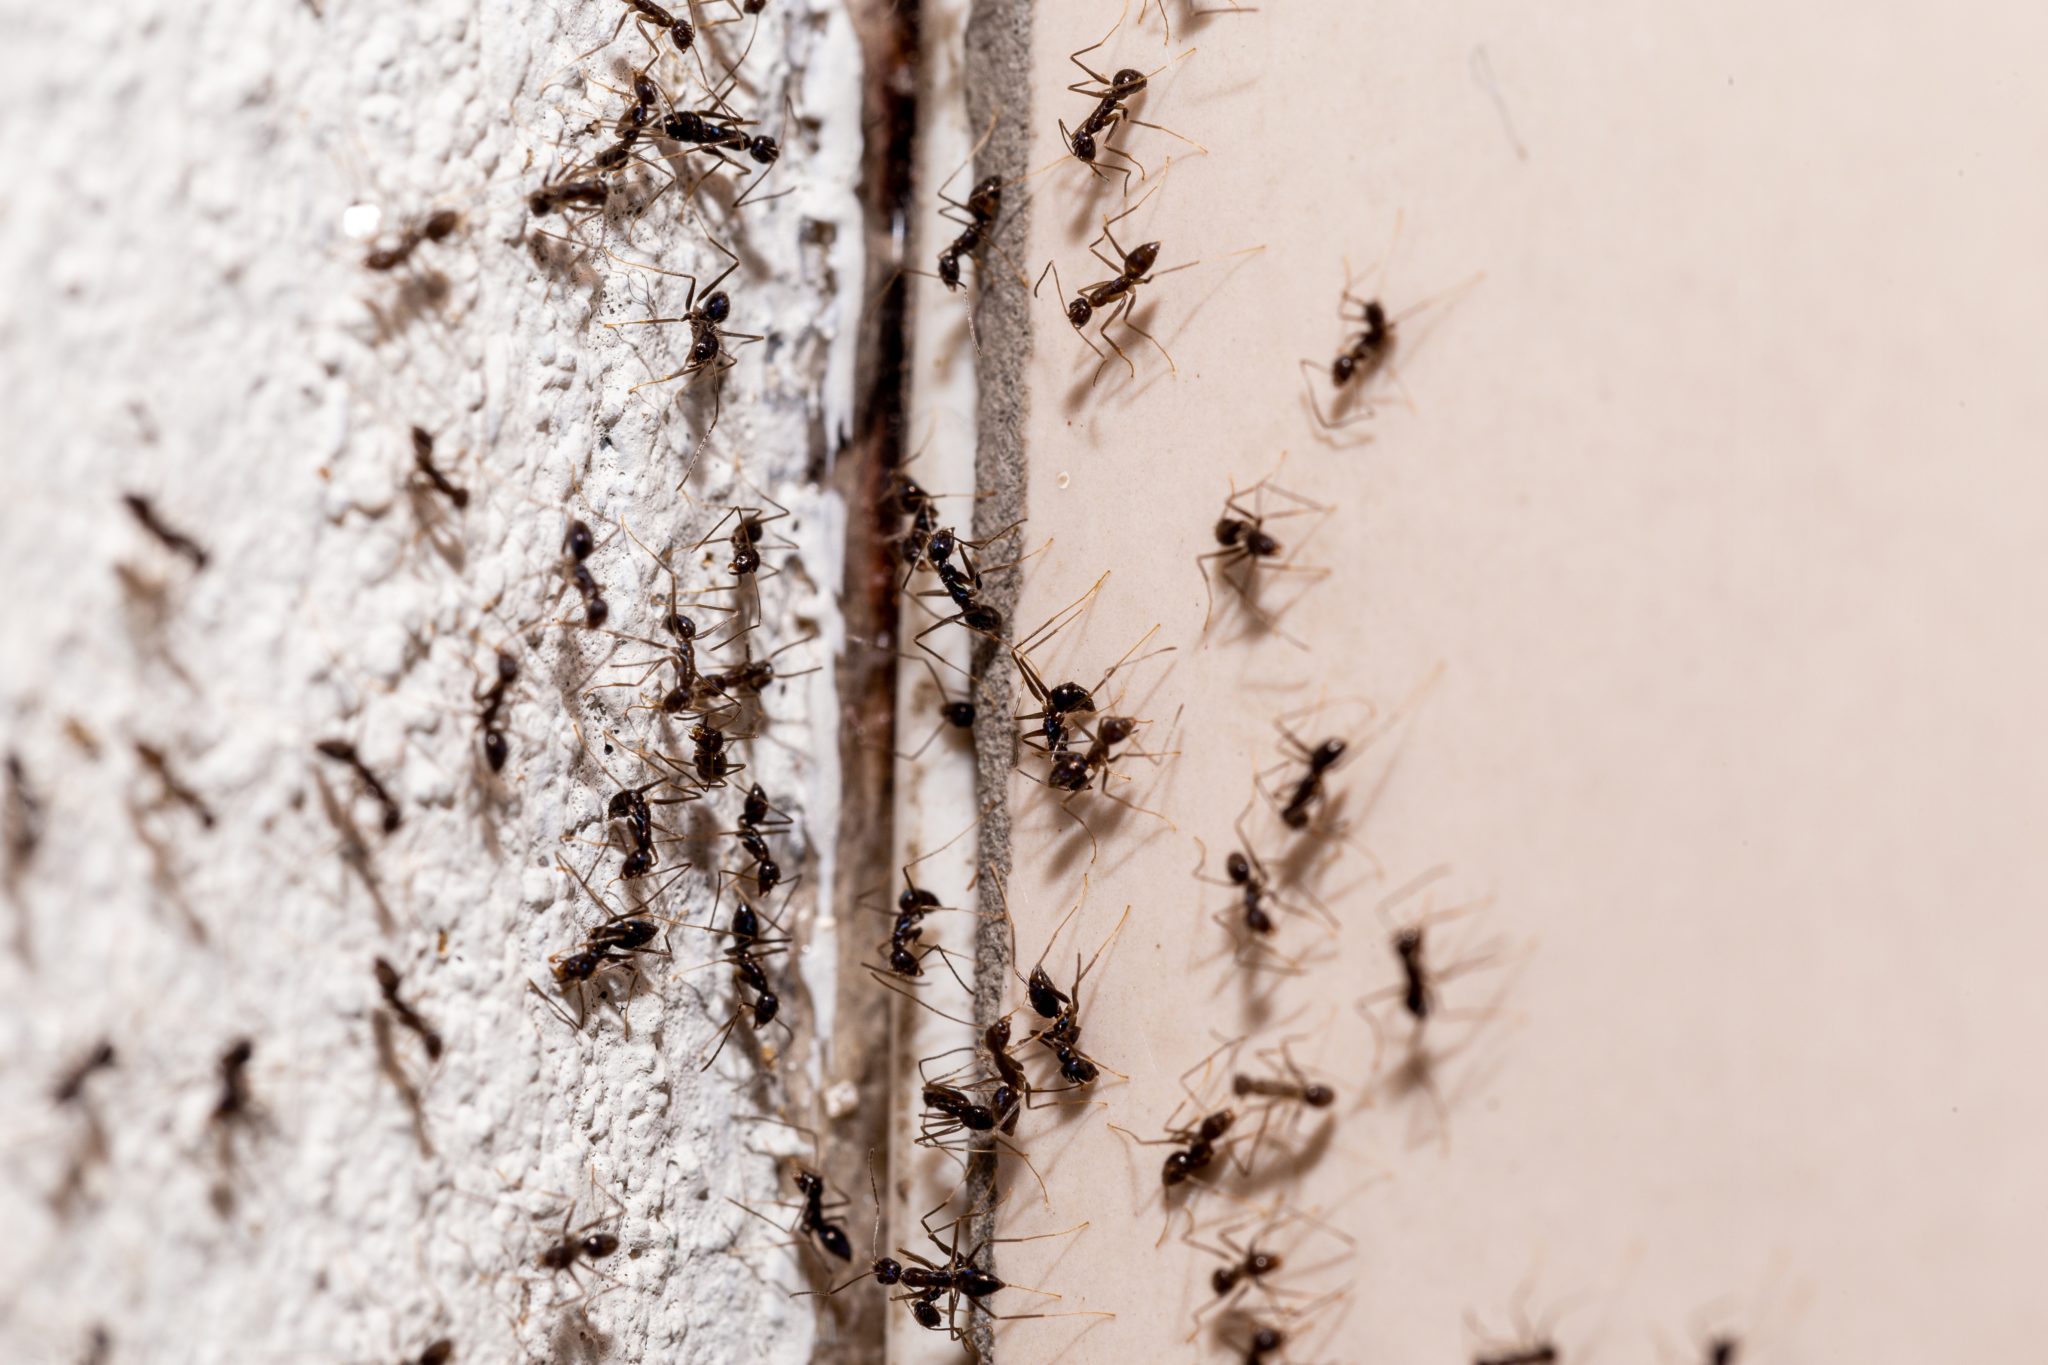 Ants infestation in Dubbo home